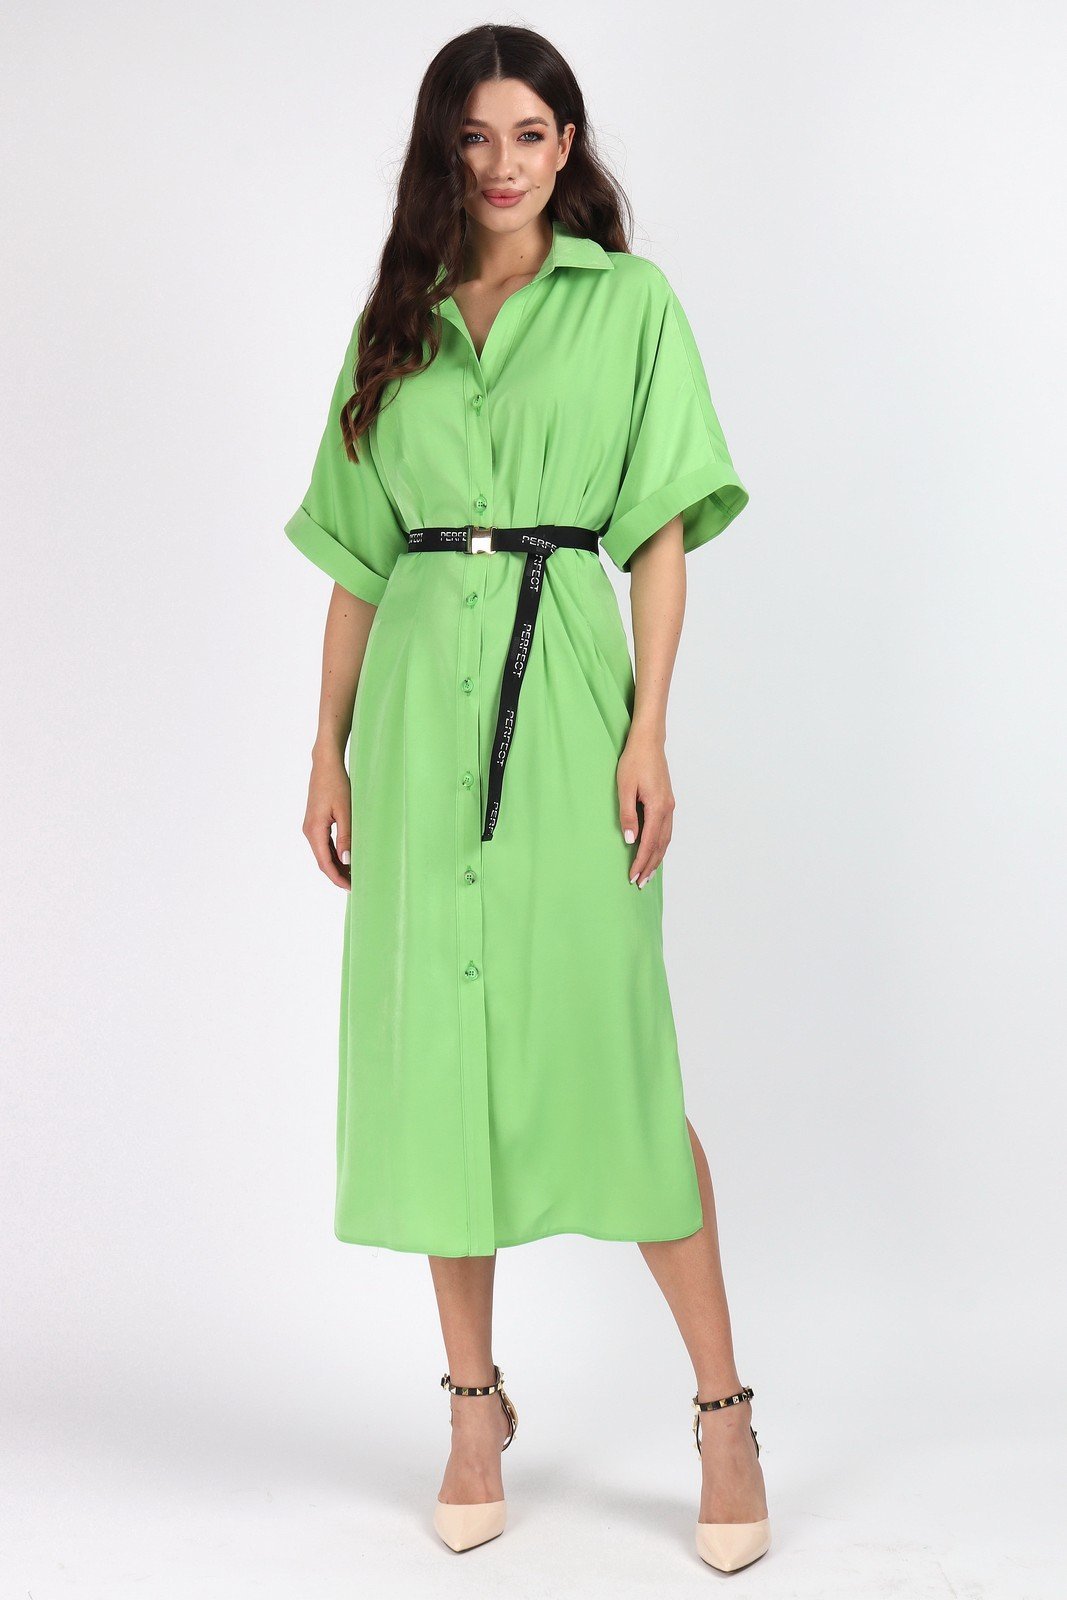 Платье 1460 Mia-Moda купить в интернет магазине | в наличии